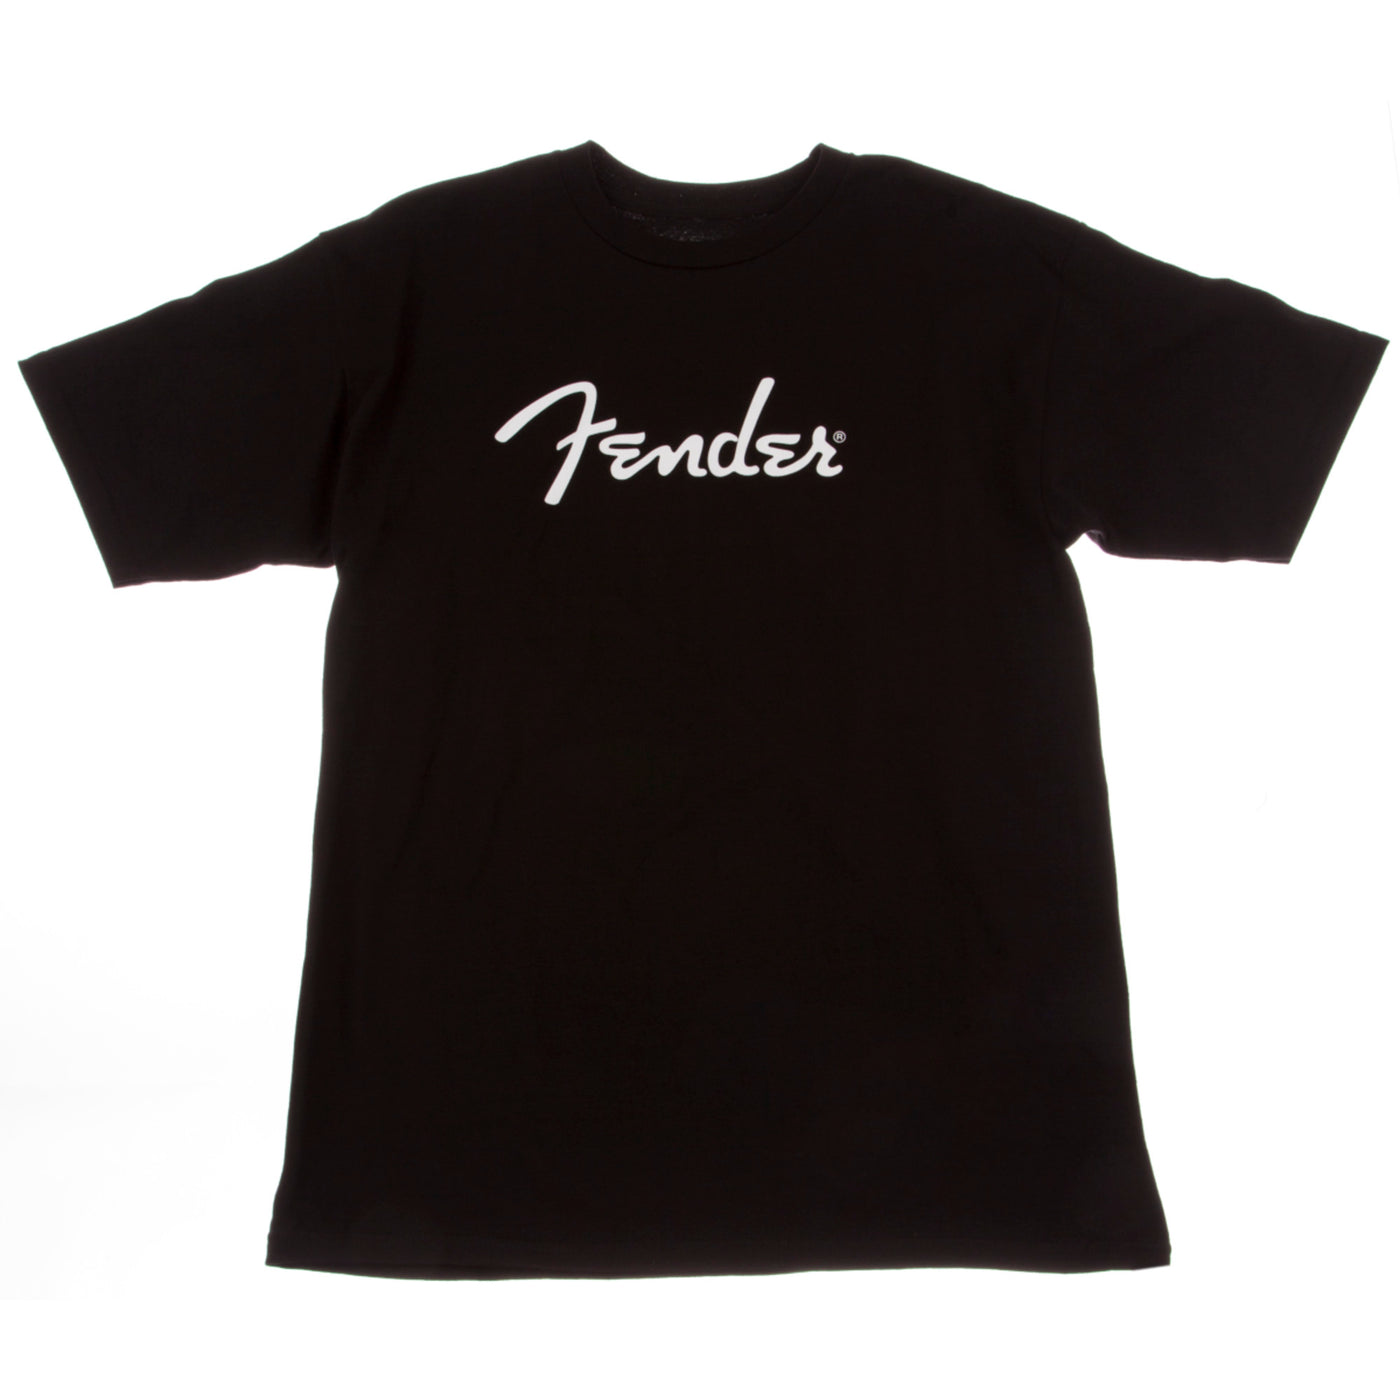 Fender Spaghetti Logo T-Shirt- Black, Large (9101000506)